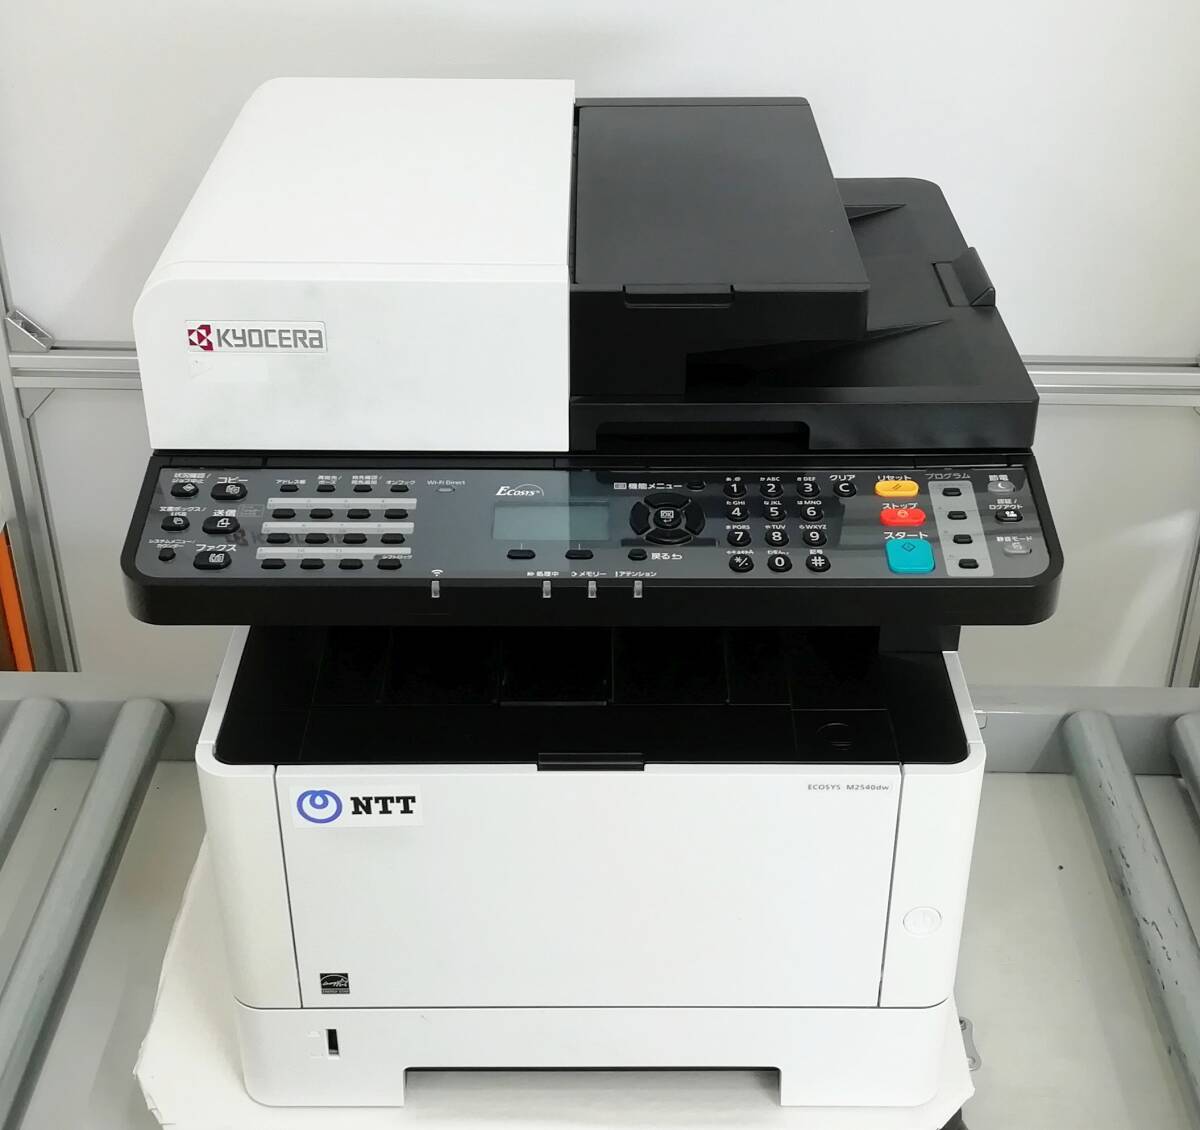  Kyocera A4 монохромный многофункциональная машина ECOSYS M2540dw печать листов число 9688 листов копирование / сканер / принтер ADF иметь двусторонний печать OK отправка в тот же день возвращенный товар с гарантией [H24031824]